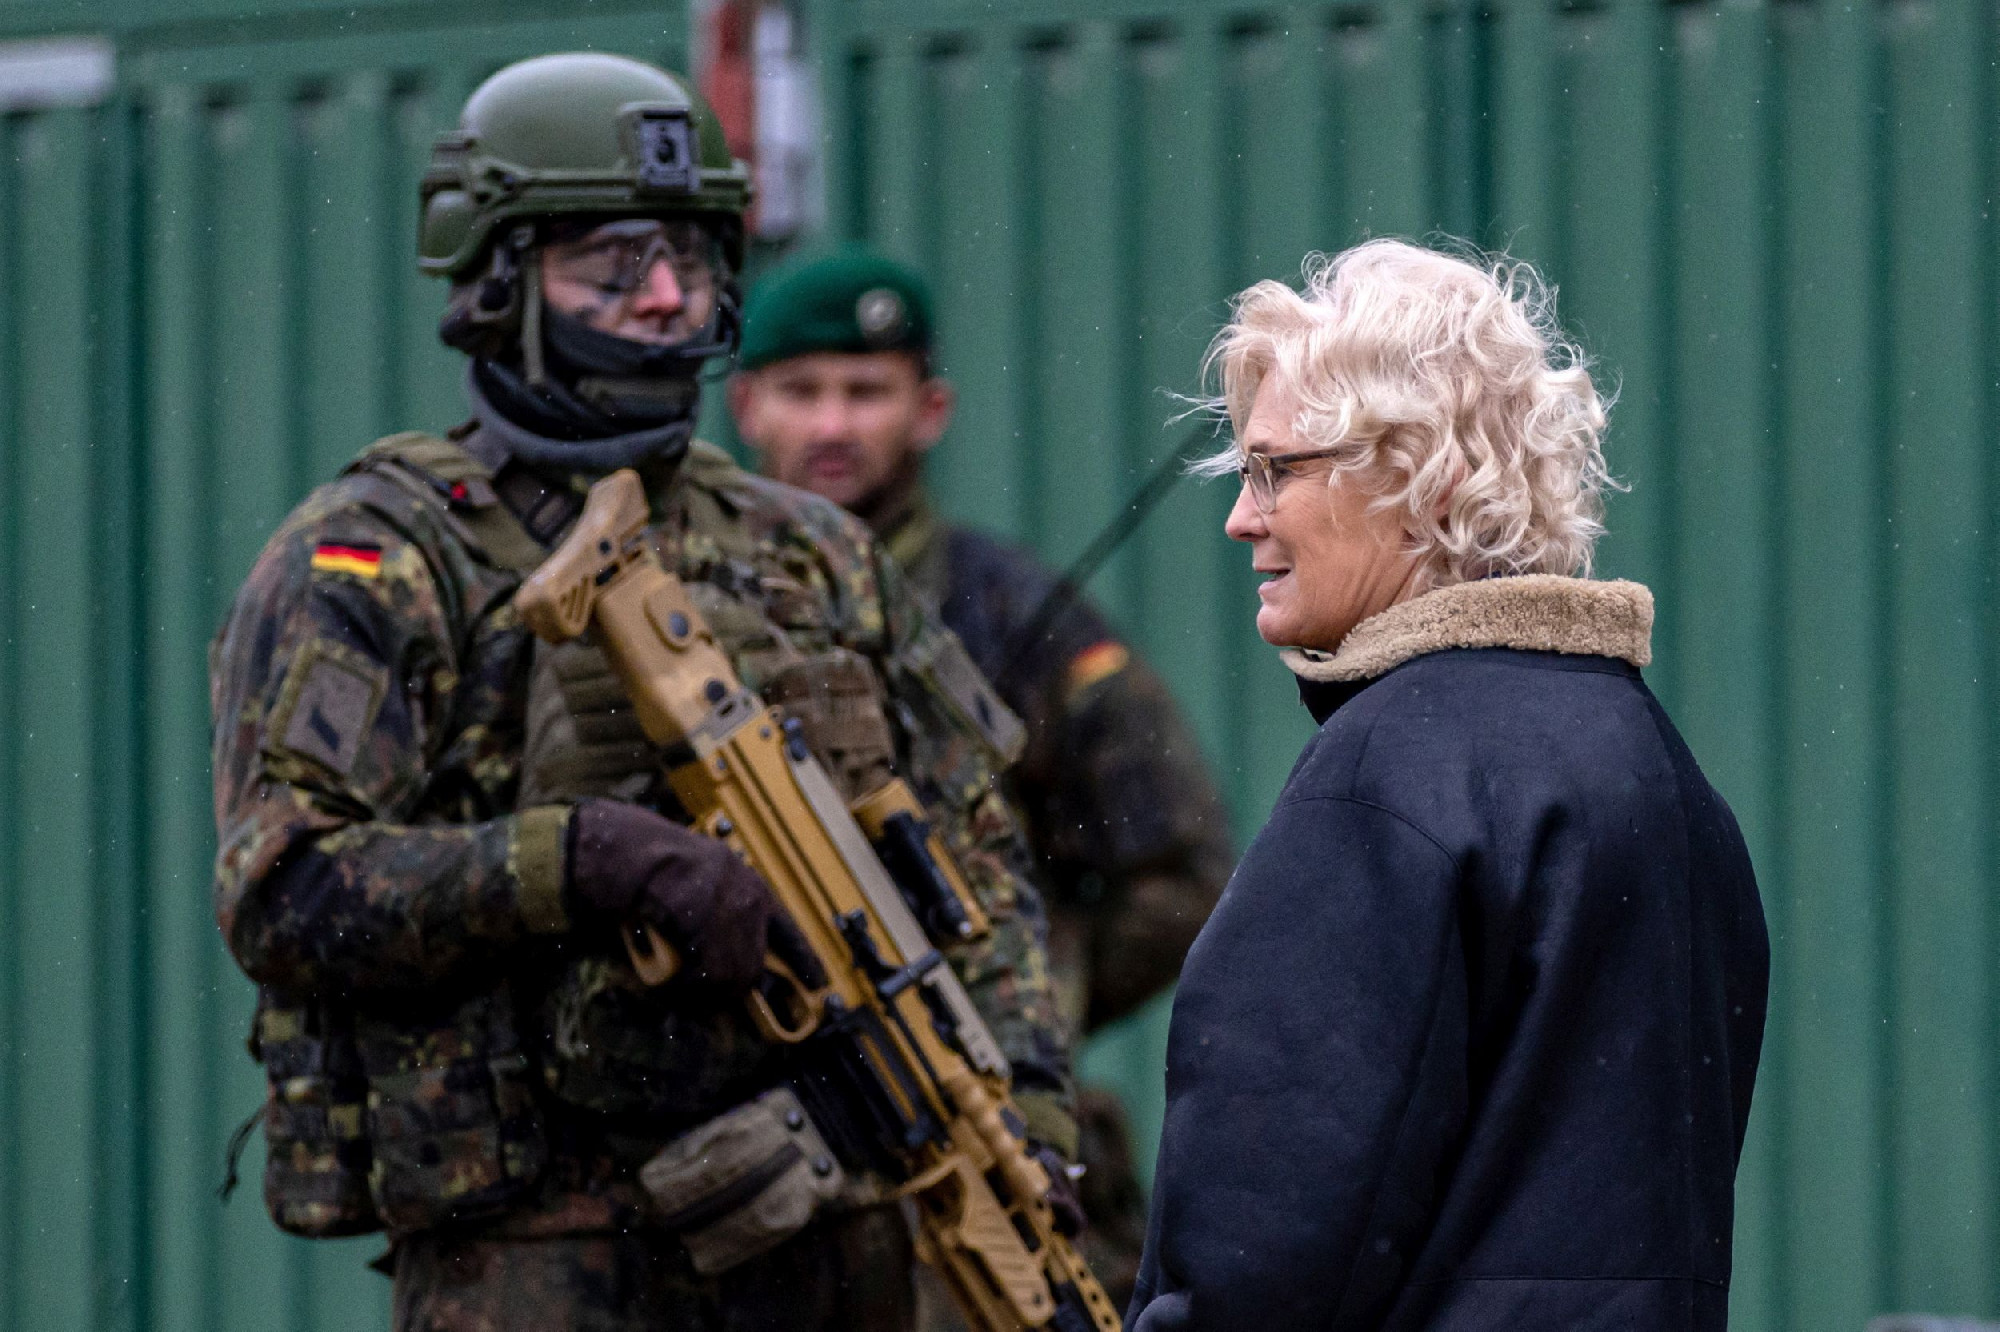 Lemondott a német védelmi miniszter